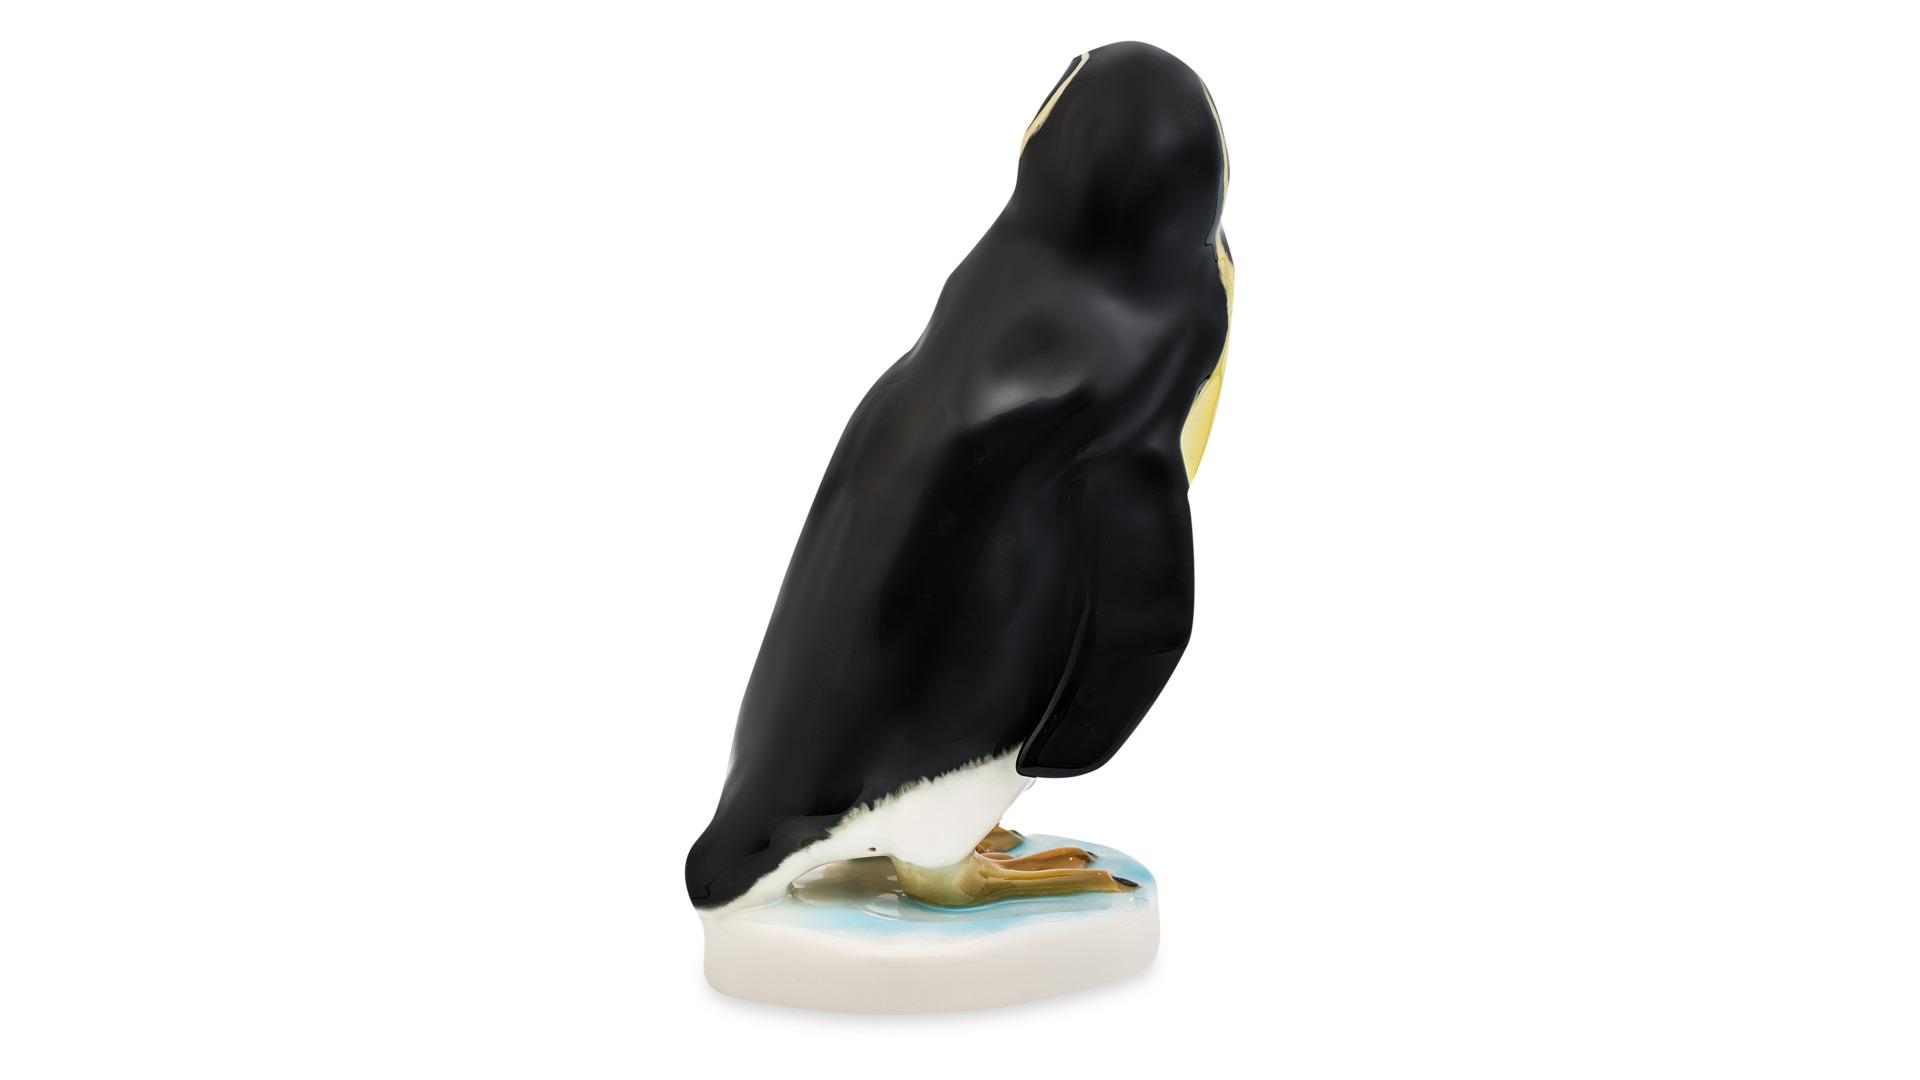 Скульптуpа Goebel Пингвин 21х16 см, фарфор твердый